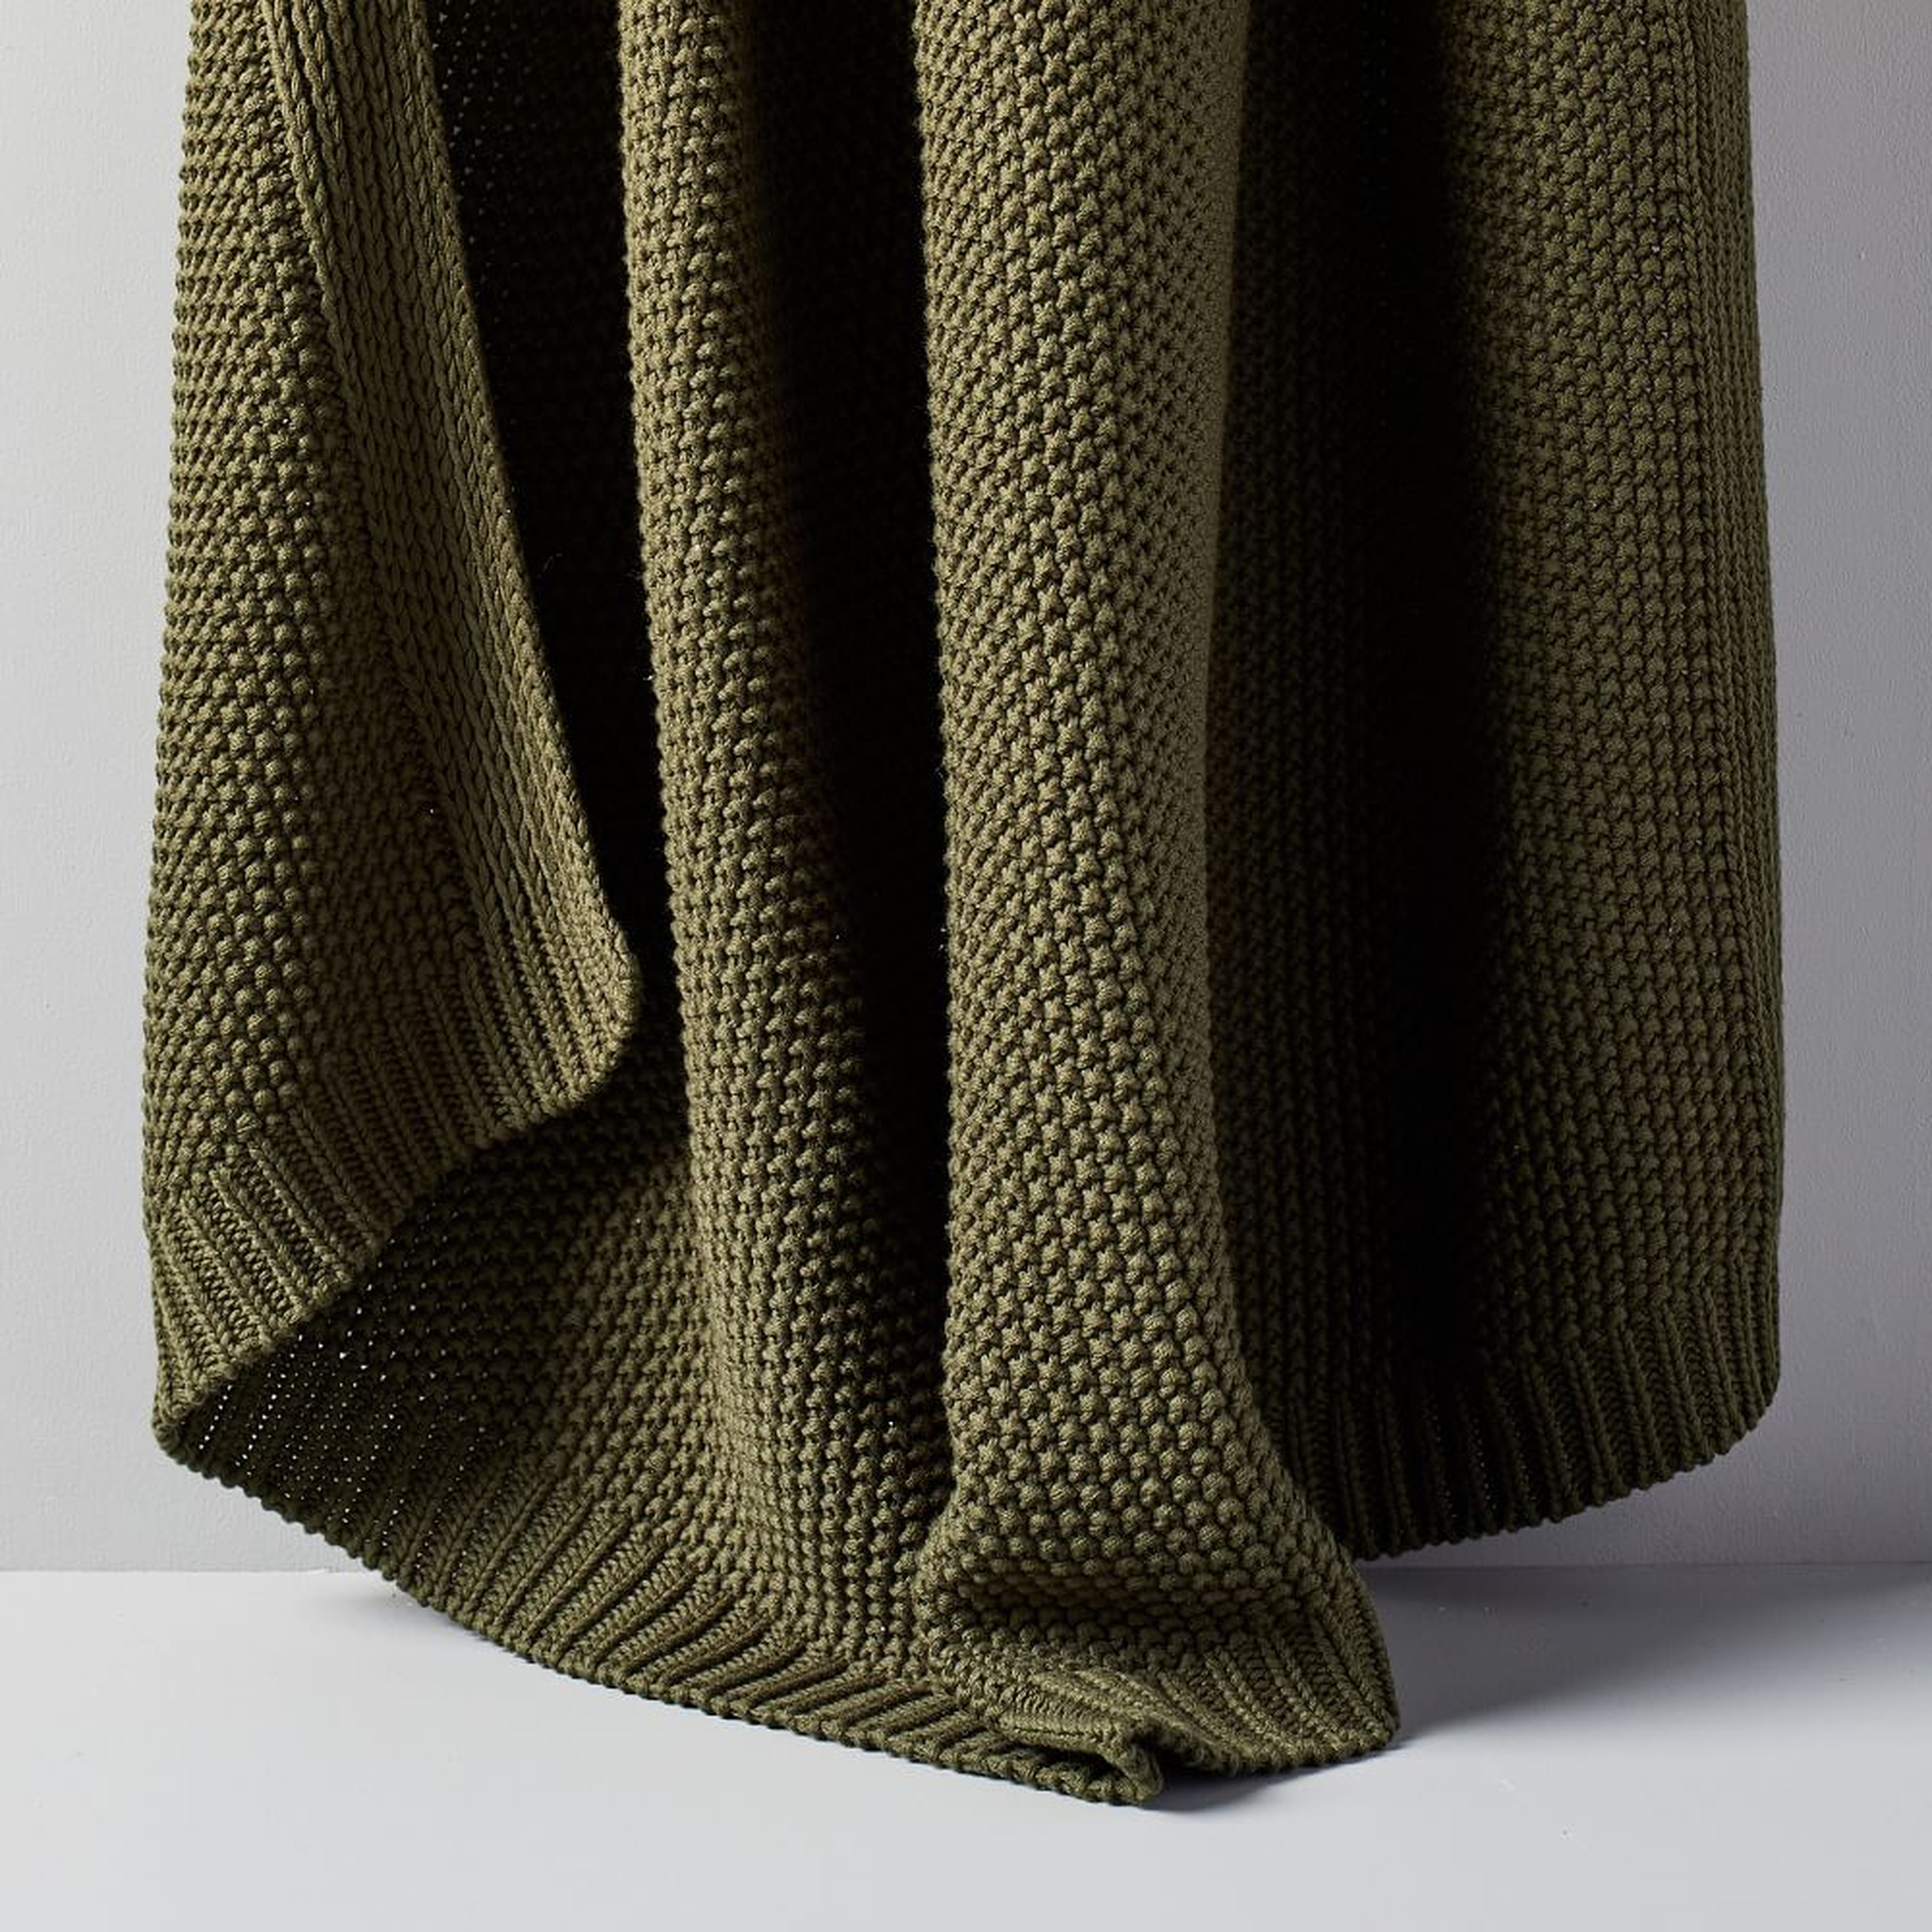 Cotton Knit Throw, Dark Olive, 50"x60" - West Elm